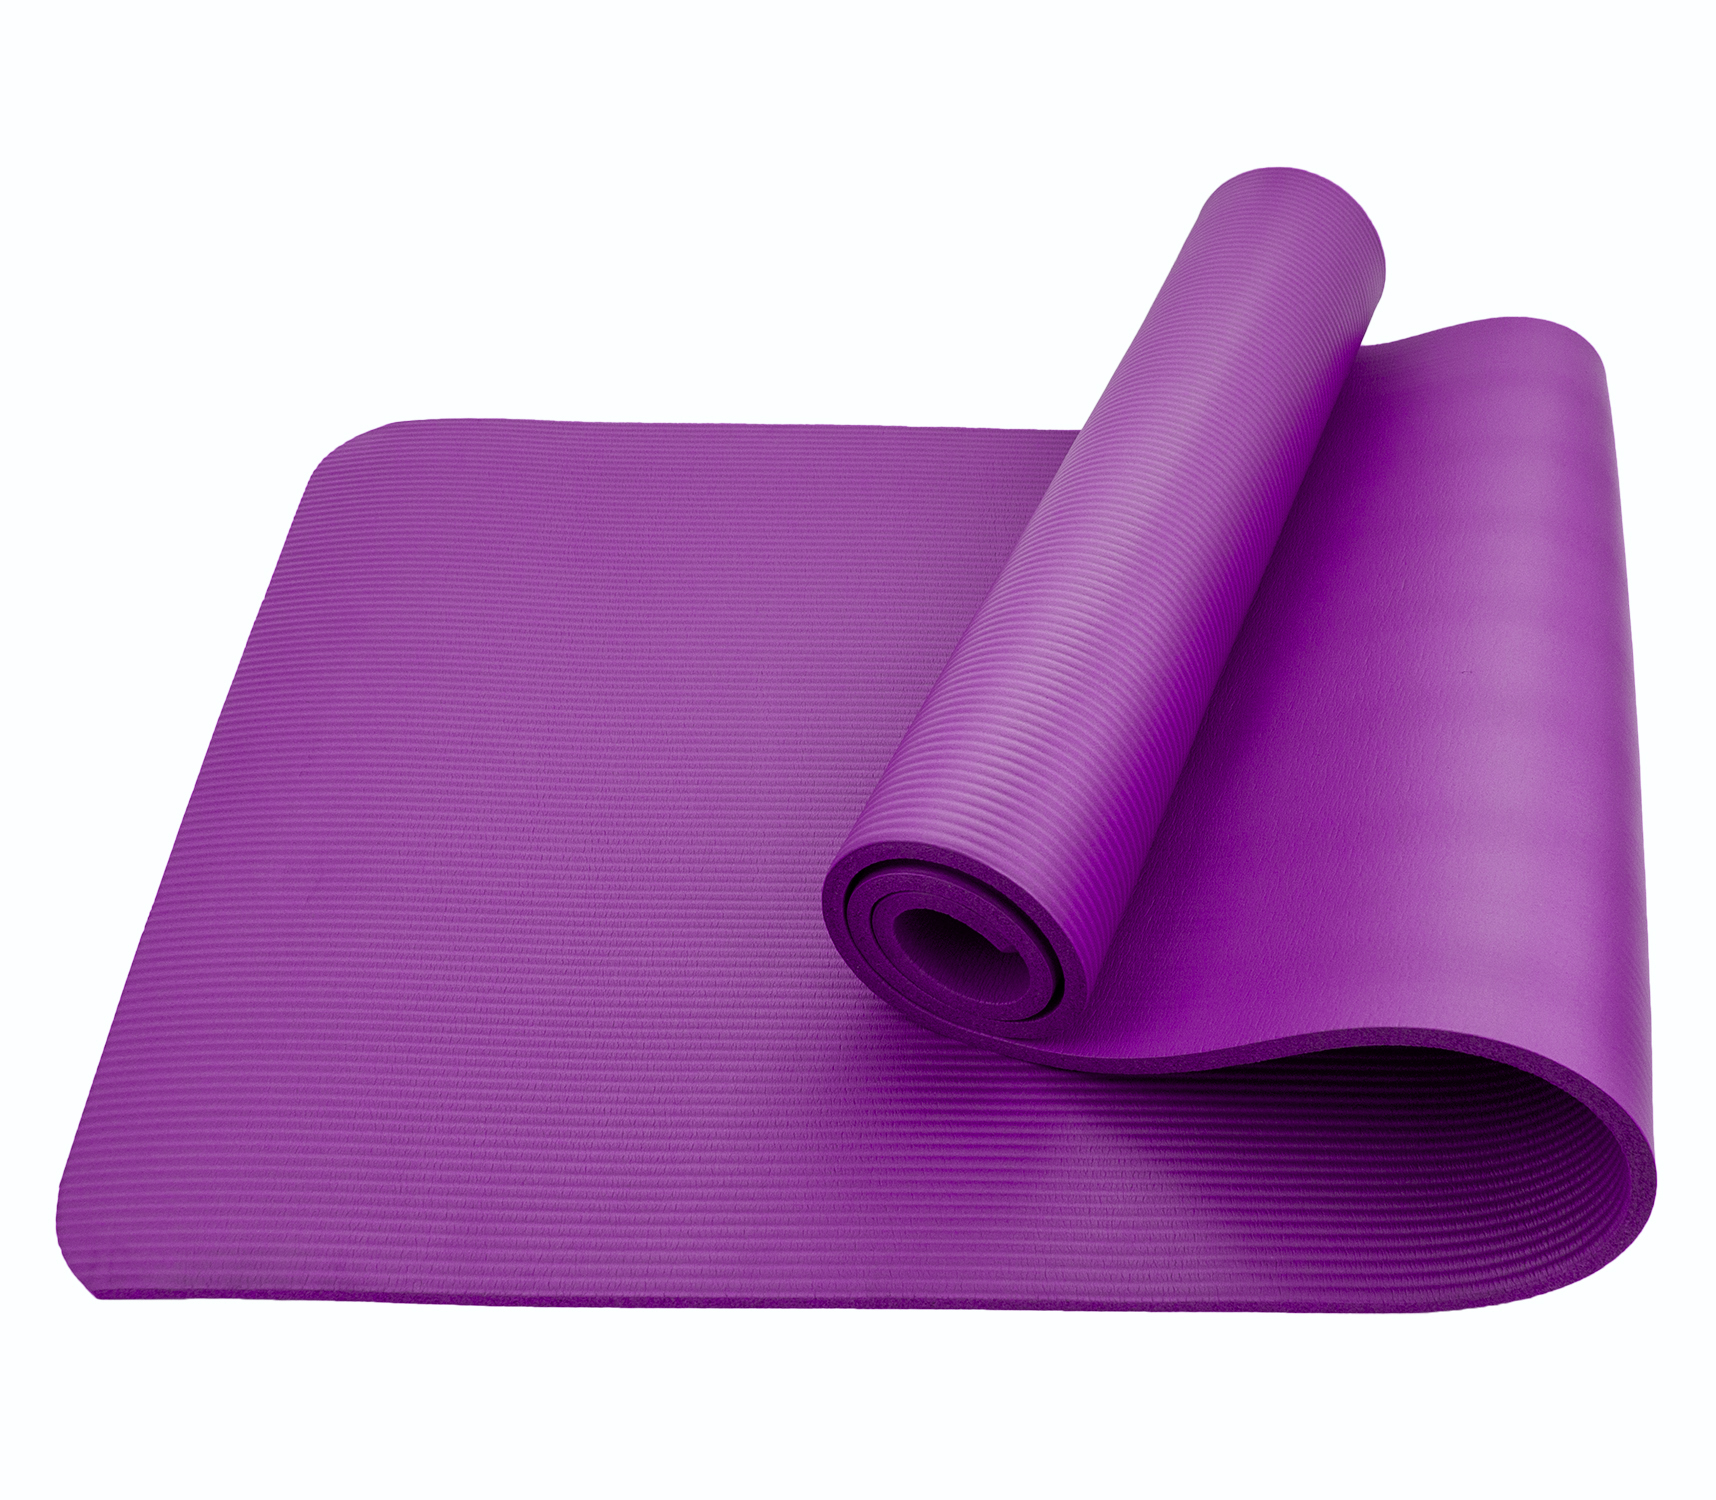  (мат) для йоги и фитнеса SportСraft NBR фиолетовый, 183х61х1 см .